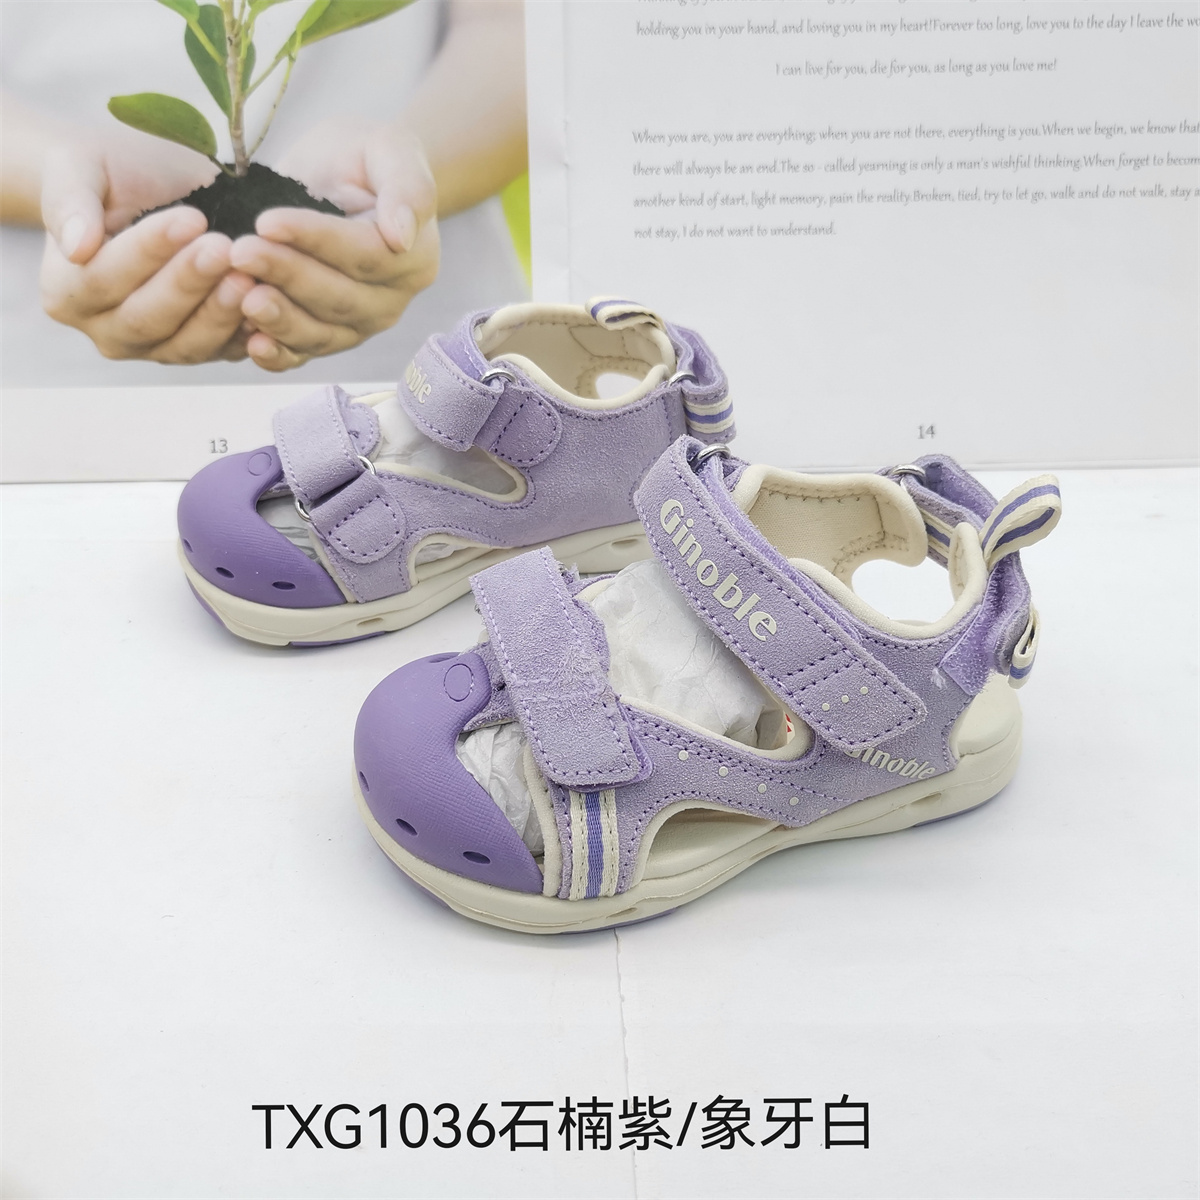 基诺浦夏款机能鞋凉鞋男童女童运动鞋跑步鞋TXG1036.1037.1038